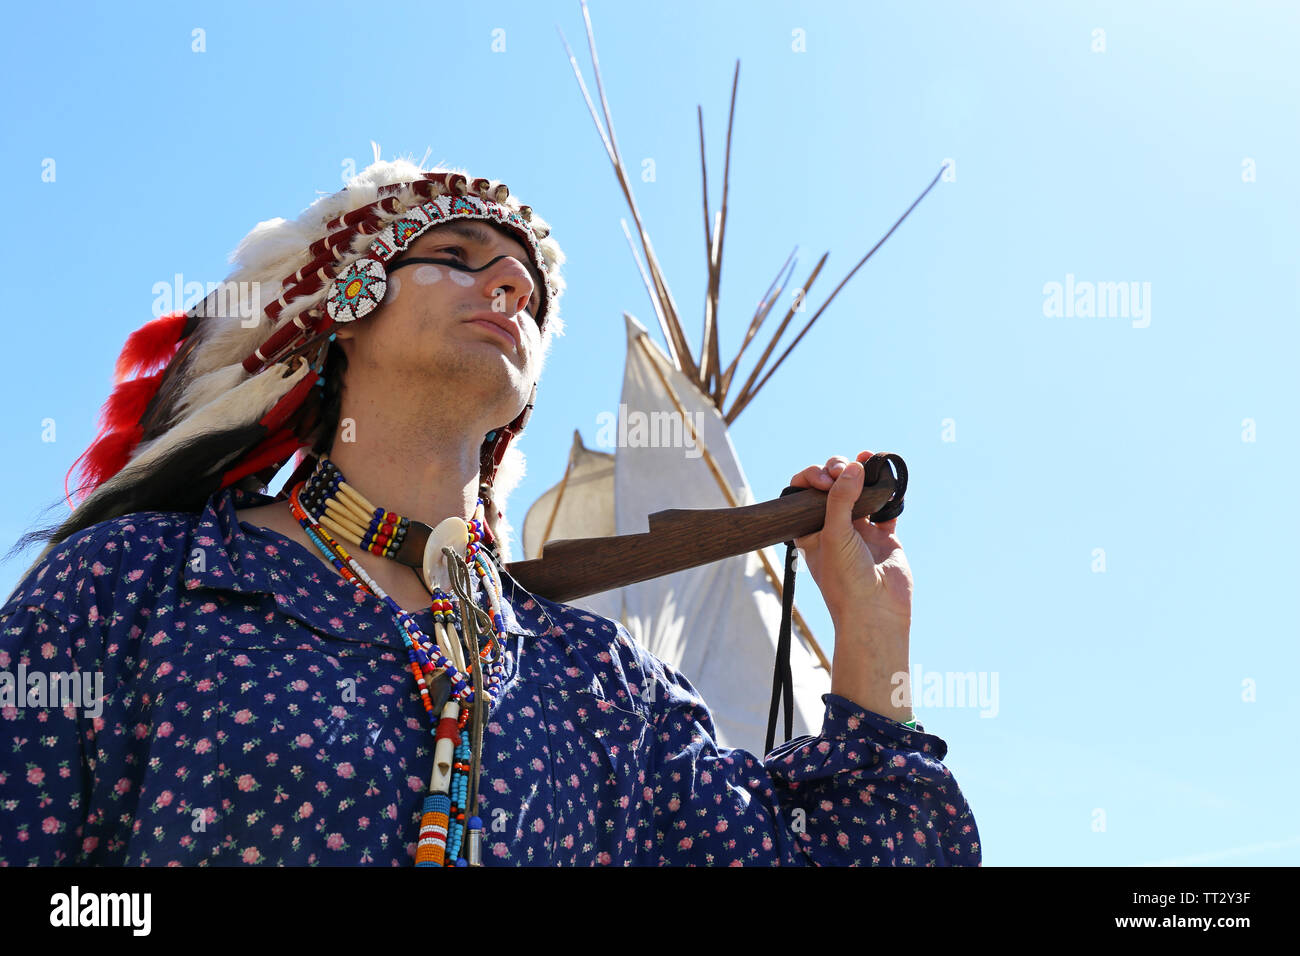 Un uomo nella guerra di vernice e vestiti di una North American Indian stand con arma vicino a wigwam contro il cielo blu. La ricostruzione dei nativi americani Foto Stock